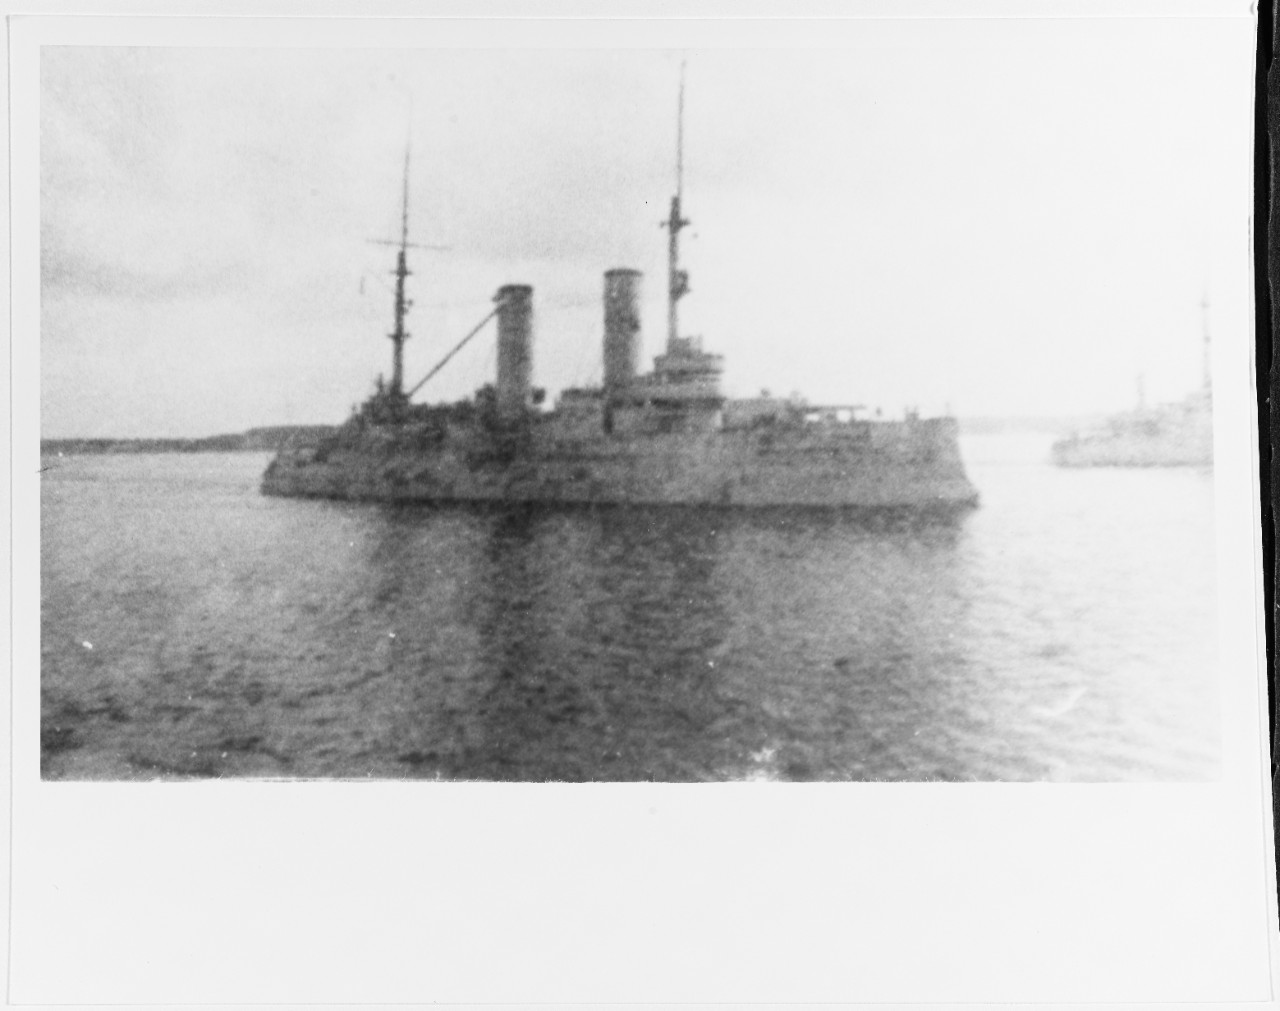 TSESSAREVICH (Russian Battleship, 1901-1923)